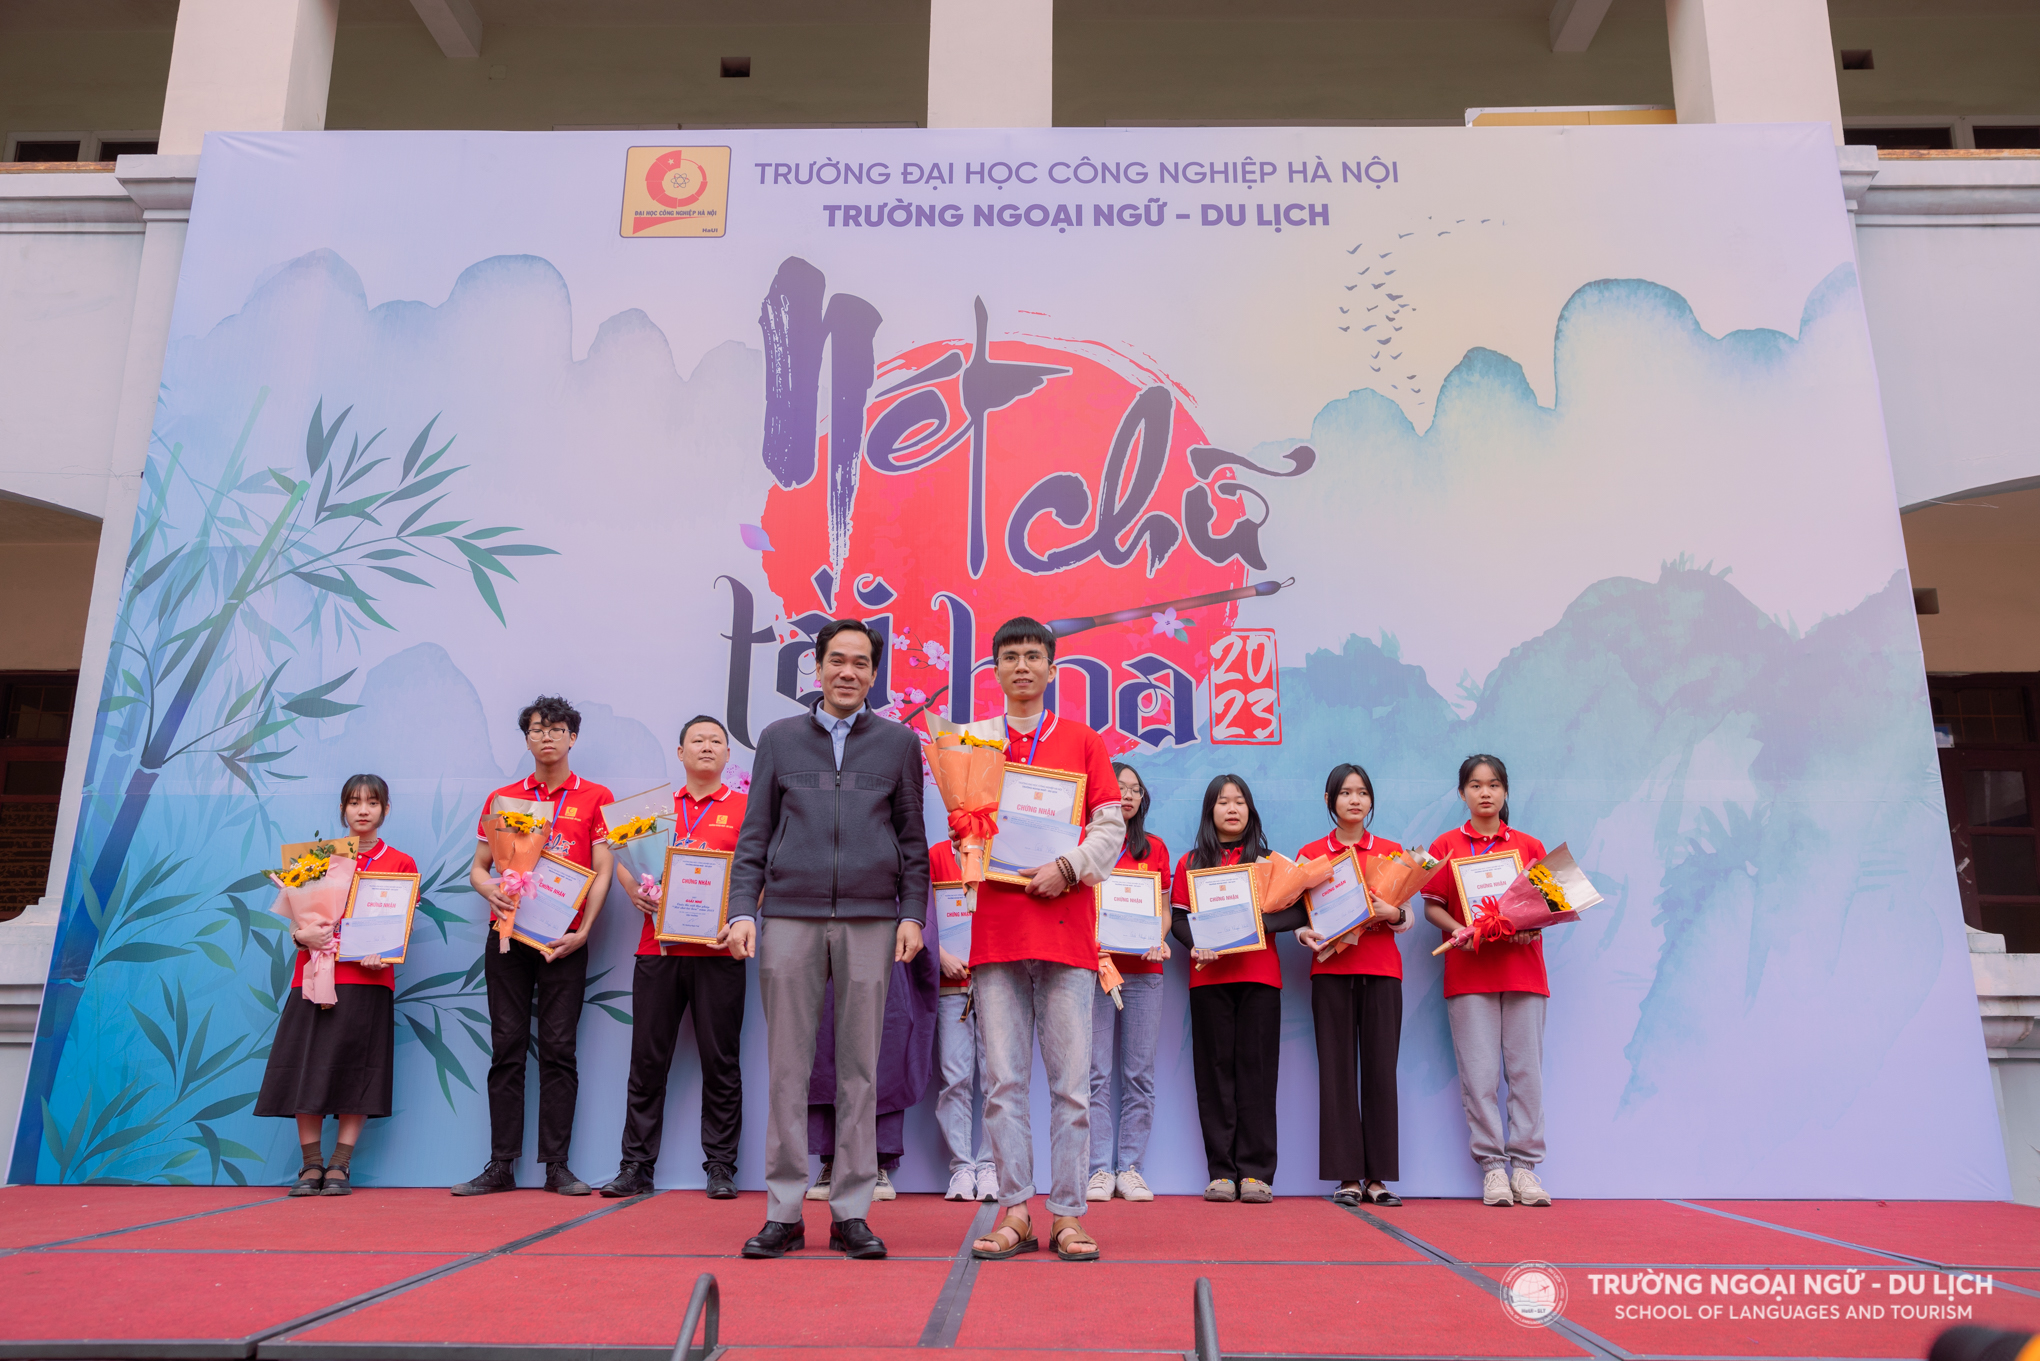 TS. Trần Ngọc Đức - Phó Hiệu trưởng Trường Ngoại ngữ - Du lịch trao giải cho thí sinh đạt giải Nhất chung cuộc